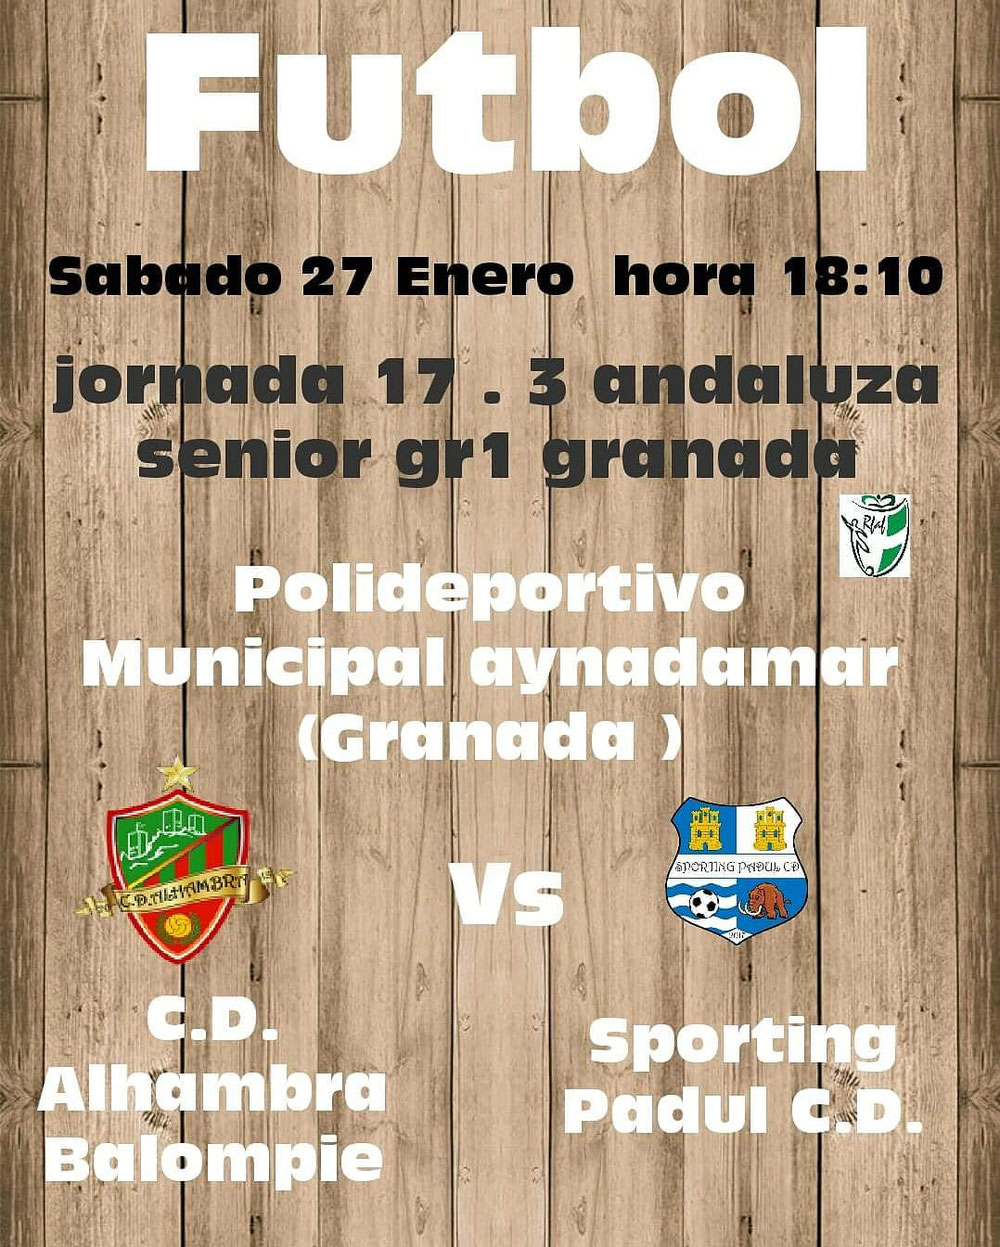 CD Alhambra Balompie vs Sporting Padul CD 